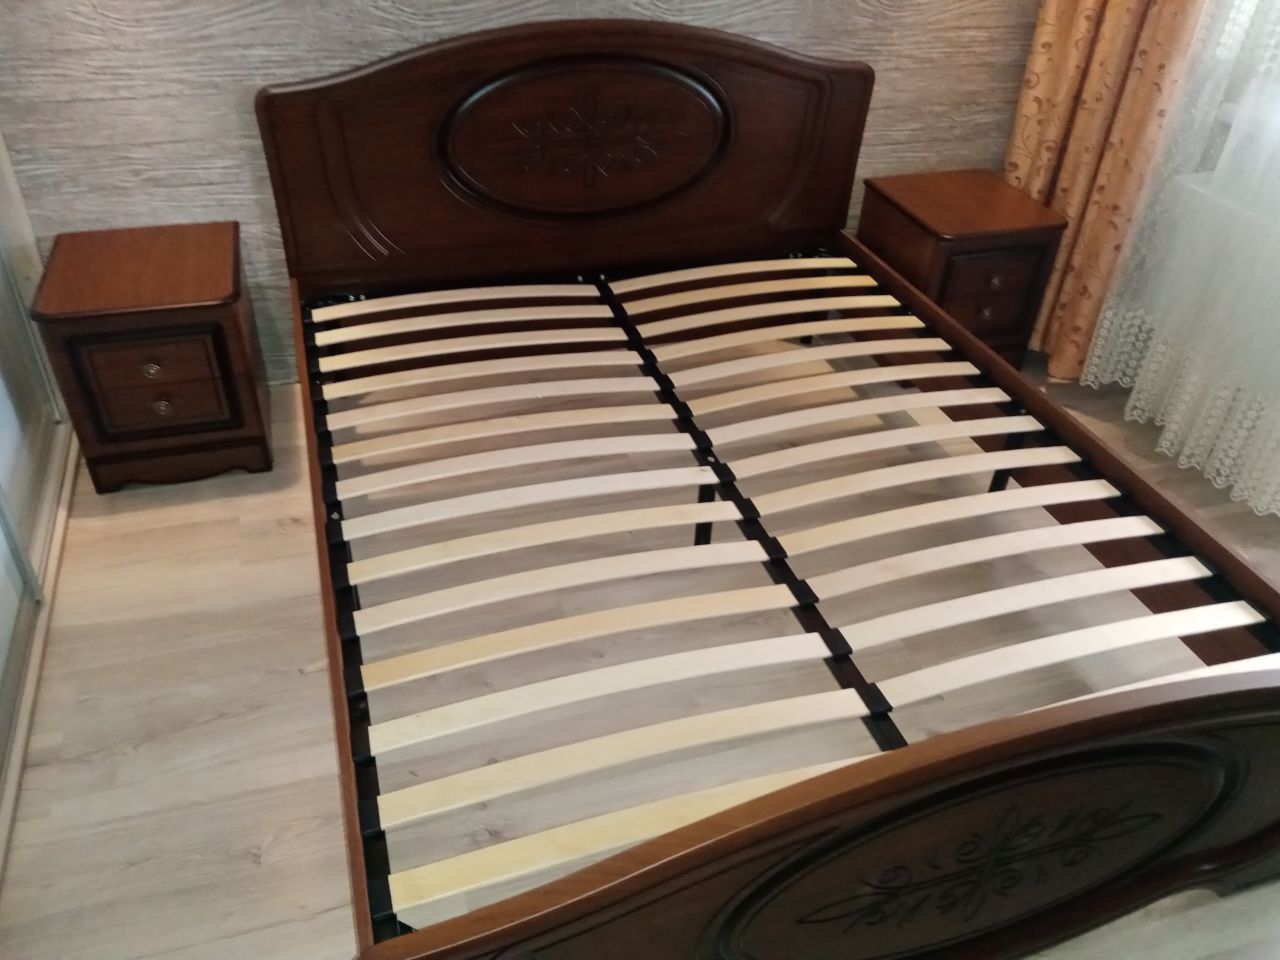 Полутораспальная кровать "Натали" 120 х 200 с подъемным мех-ом цвет клен/ясень беж-ый изножье низкое